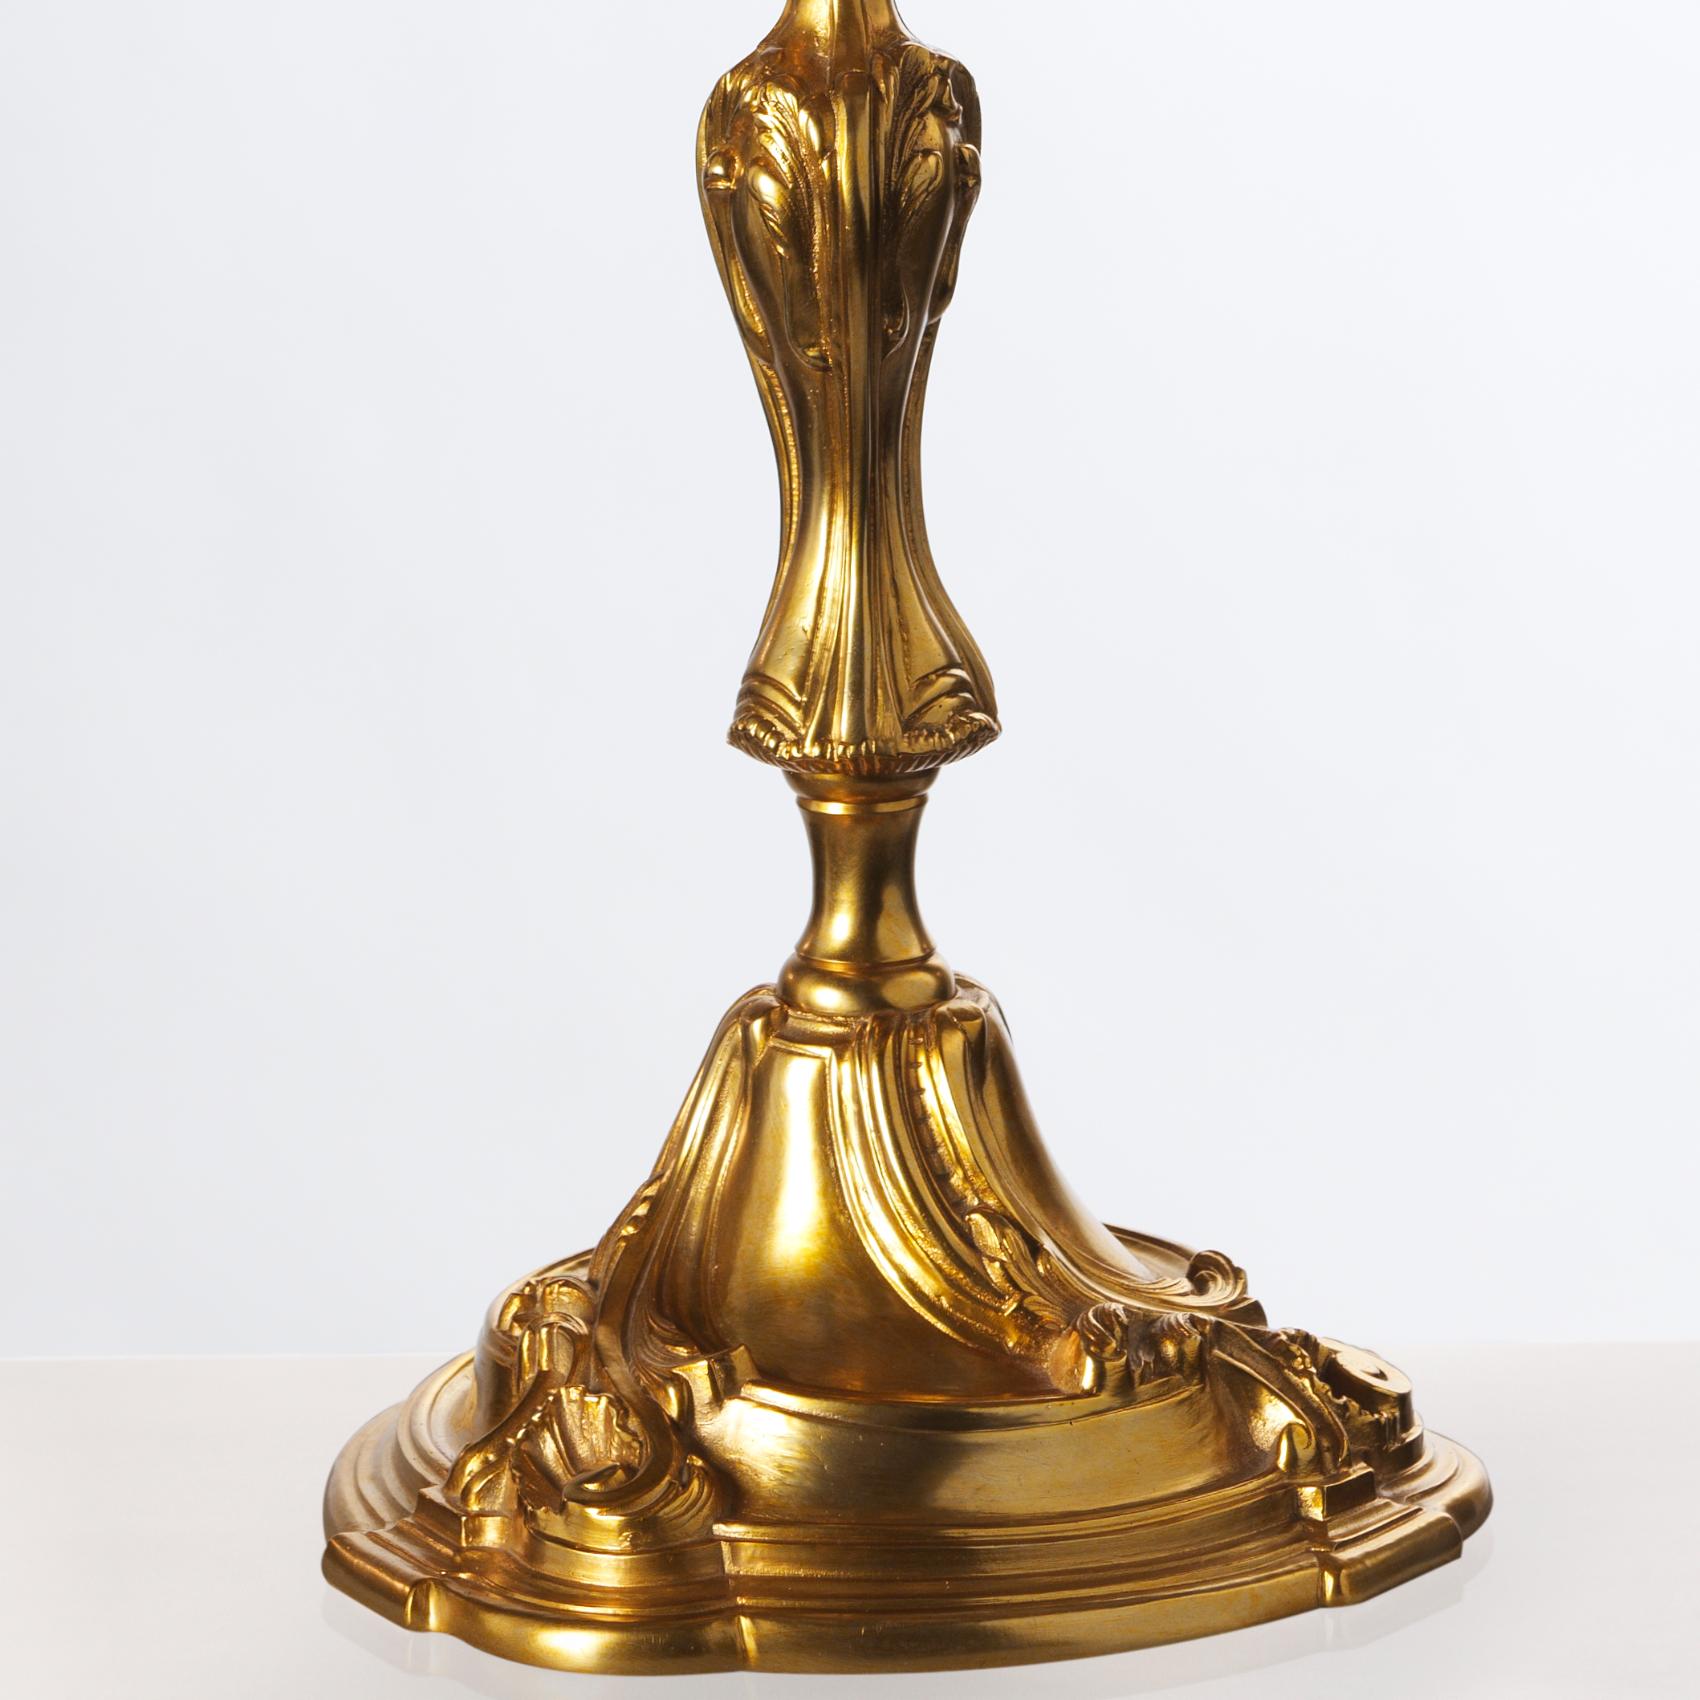 Diese vergoldete Bronzelampe im Stil Ludwigs XV. von Gherardo Degli Albizzi nimmt den großartigen Geschmack der Dekoration der Rococò-Zeit wieder auf. Das Stück ist mit pflanzlichen Motiven verziert und zeichnet sich durch seine eleganten und